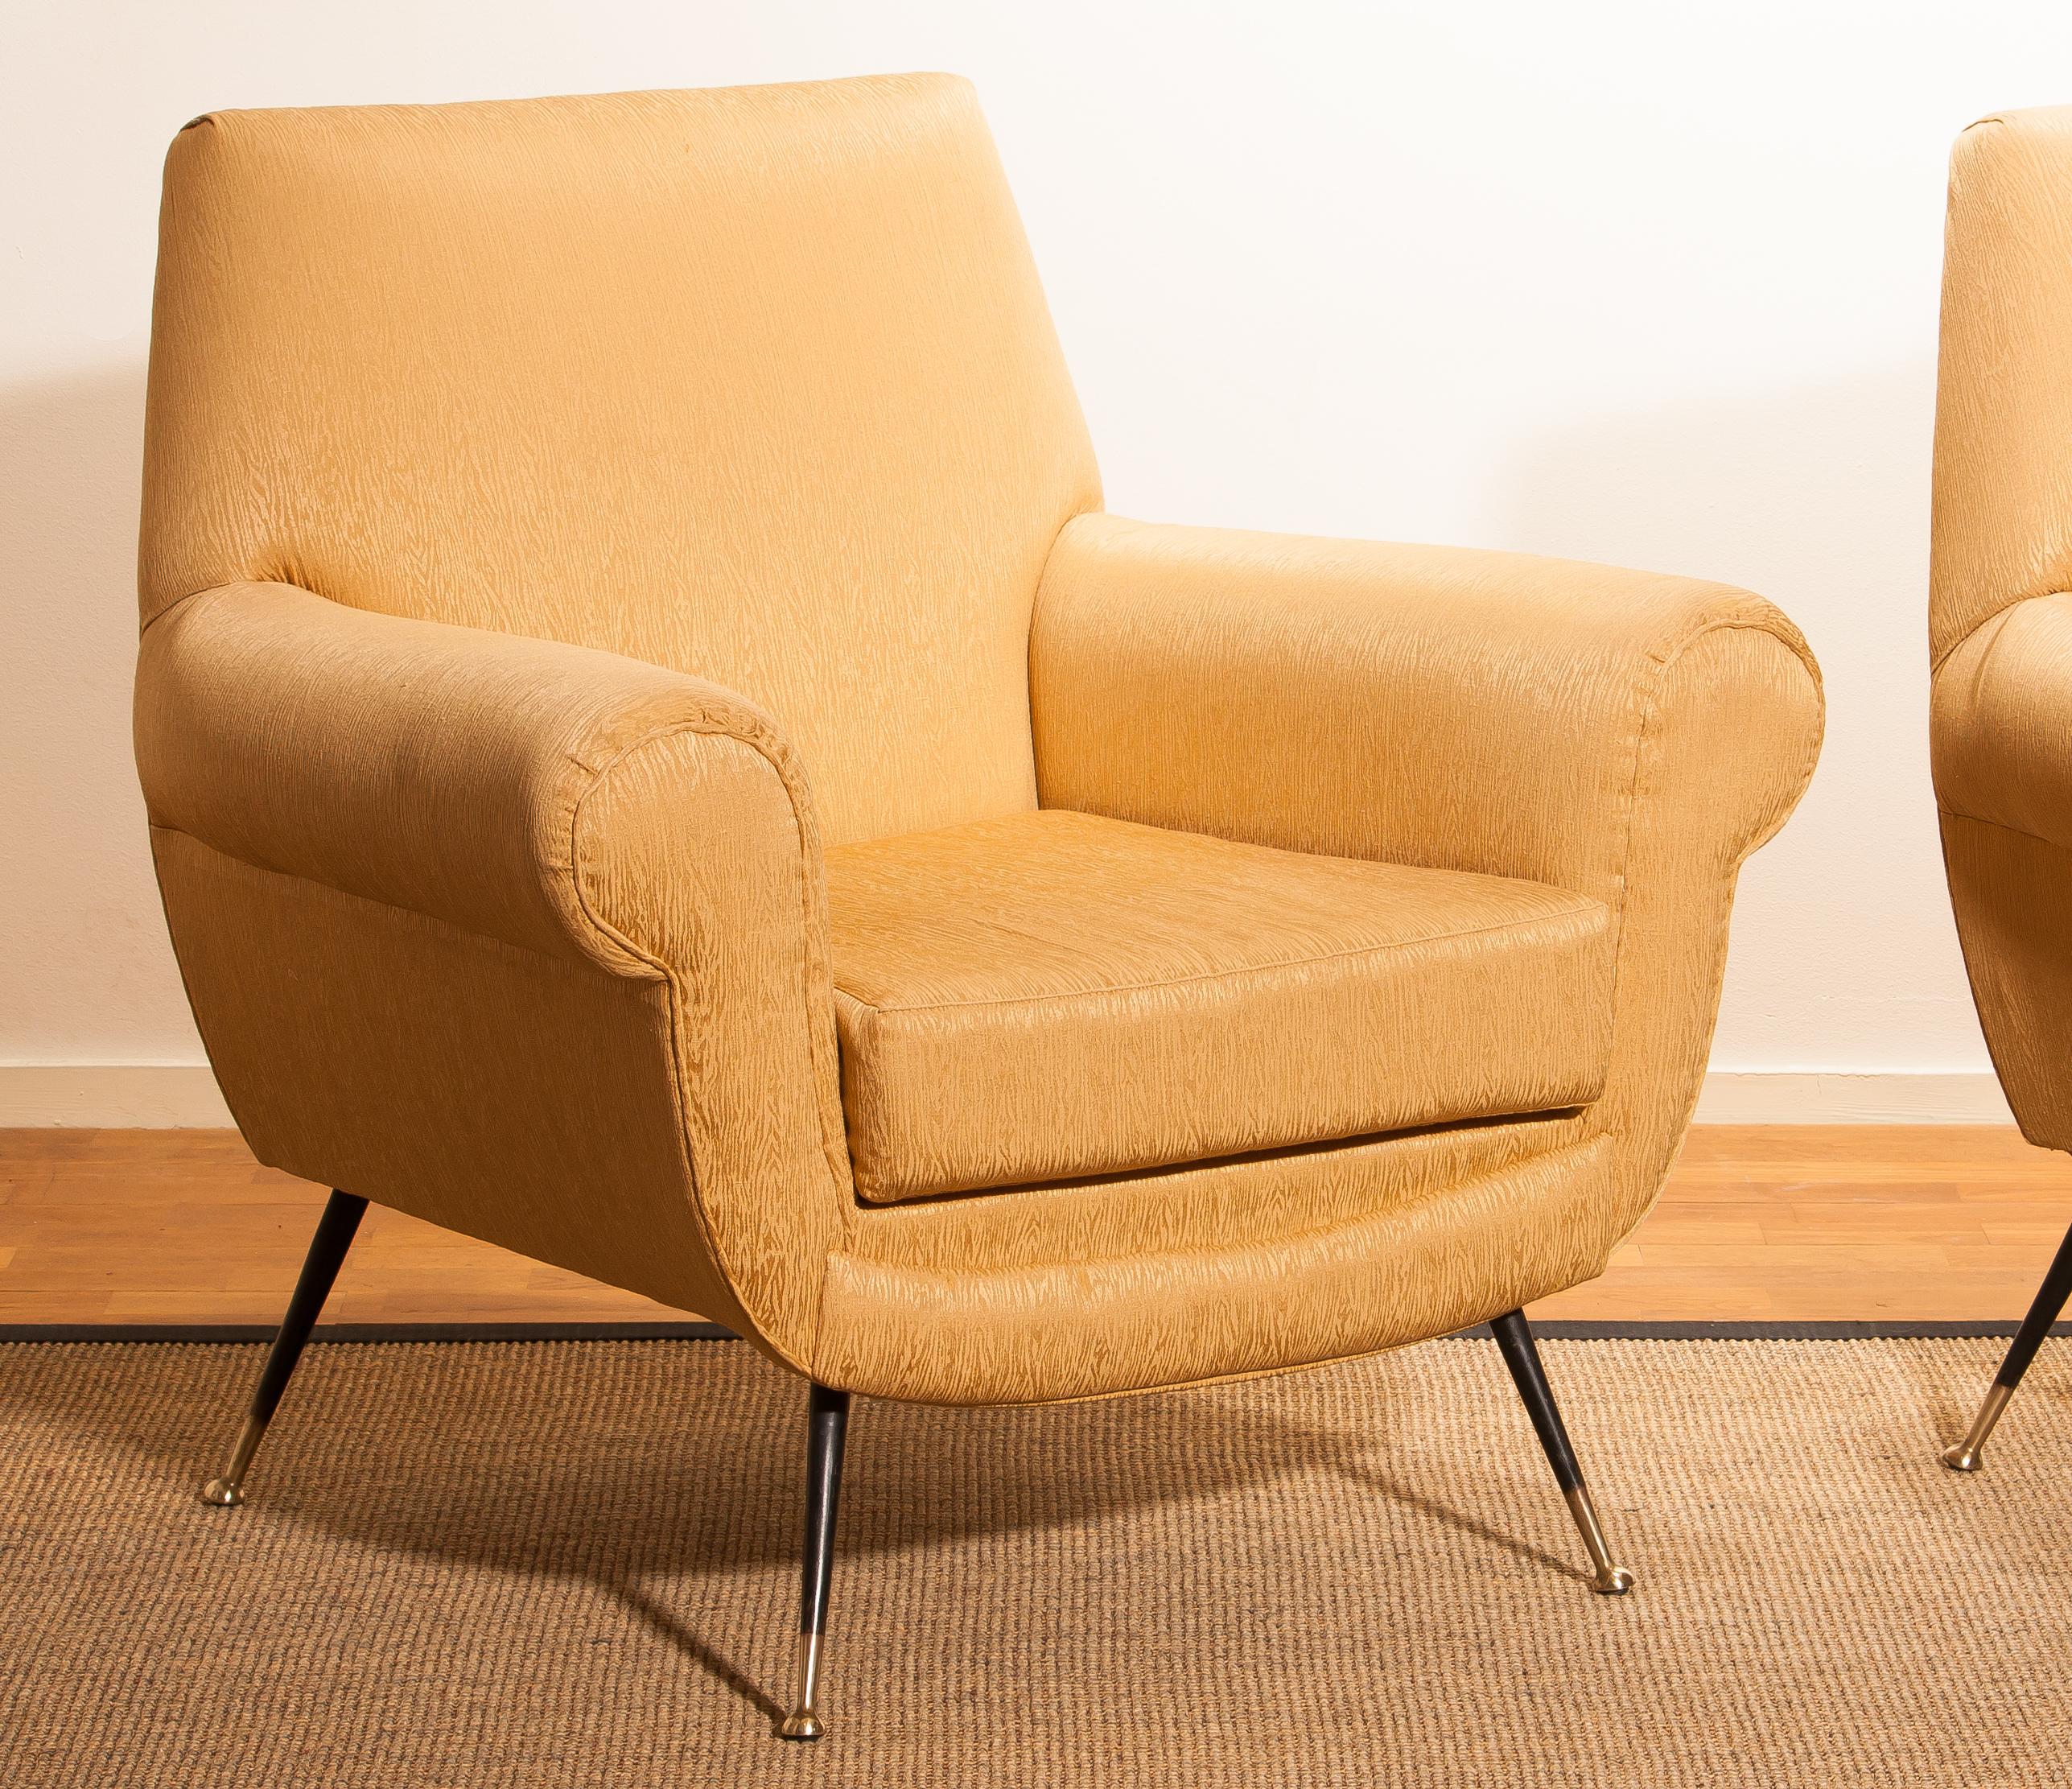 Golden Jacquard Upholstered Easy Chairs by Gigi Radice for Minotti, Brass Legs 8